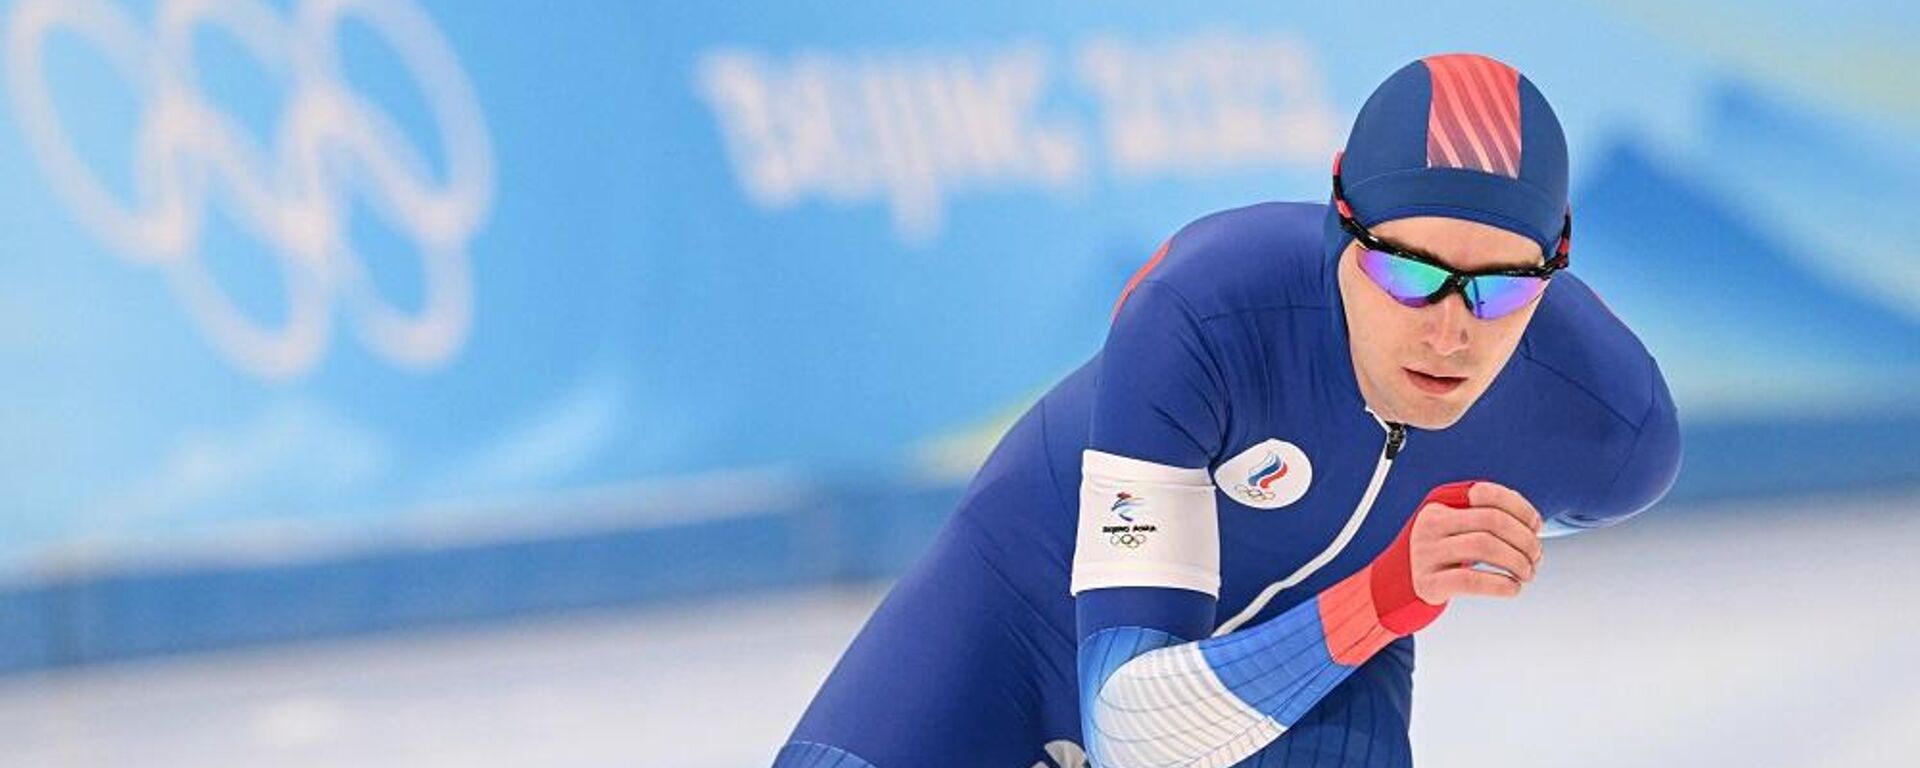 俄罗斯速滑运动员谢尔盖61特罗菲莫夫 